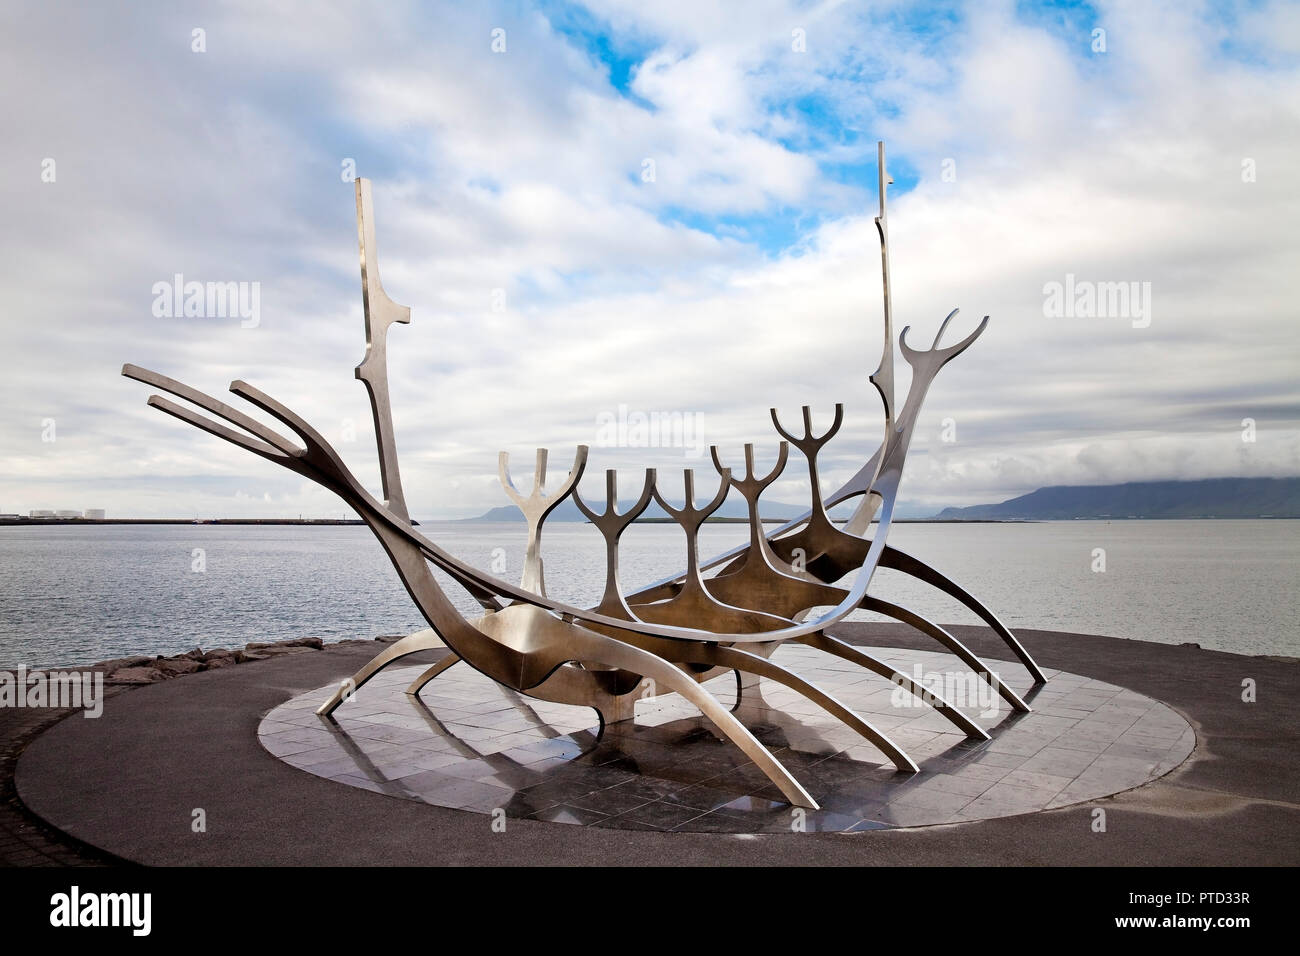 Sculpture Sólfar, Viking ship made of steel, artist Jón Gunnar Árnason, Reykjavik, Iceland Stock Photo